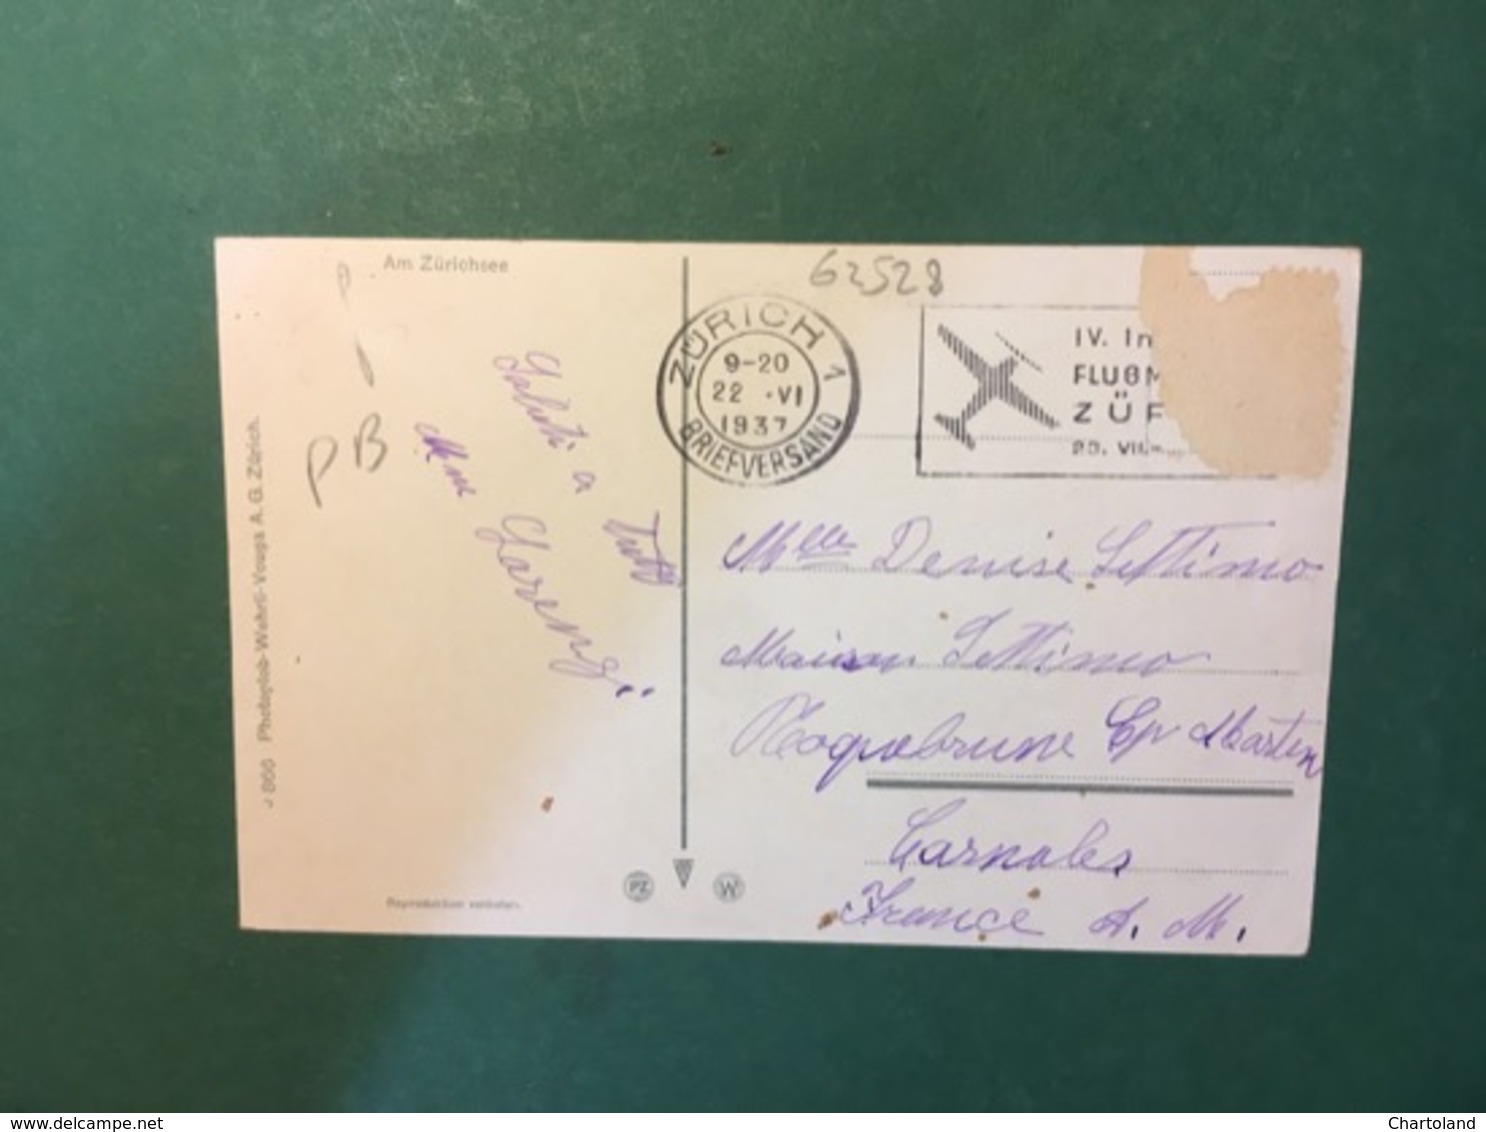 Cartolina Am Zurichsee - 1937 - Non Classificati